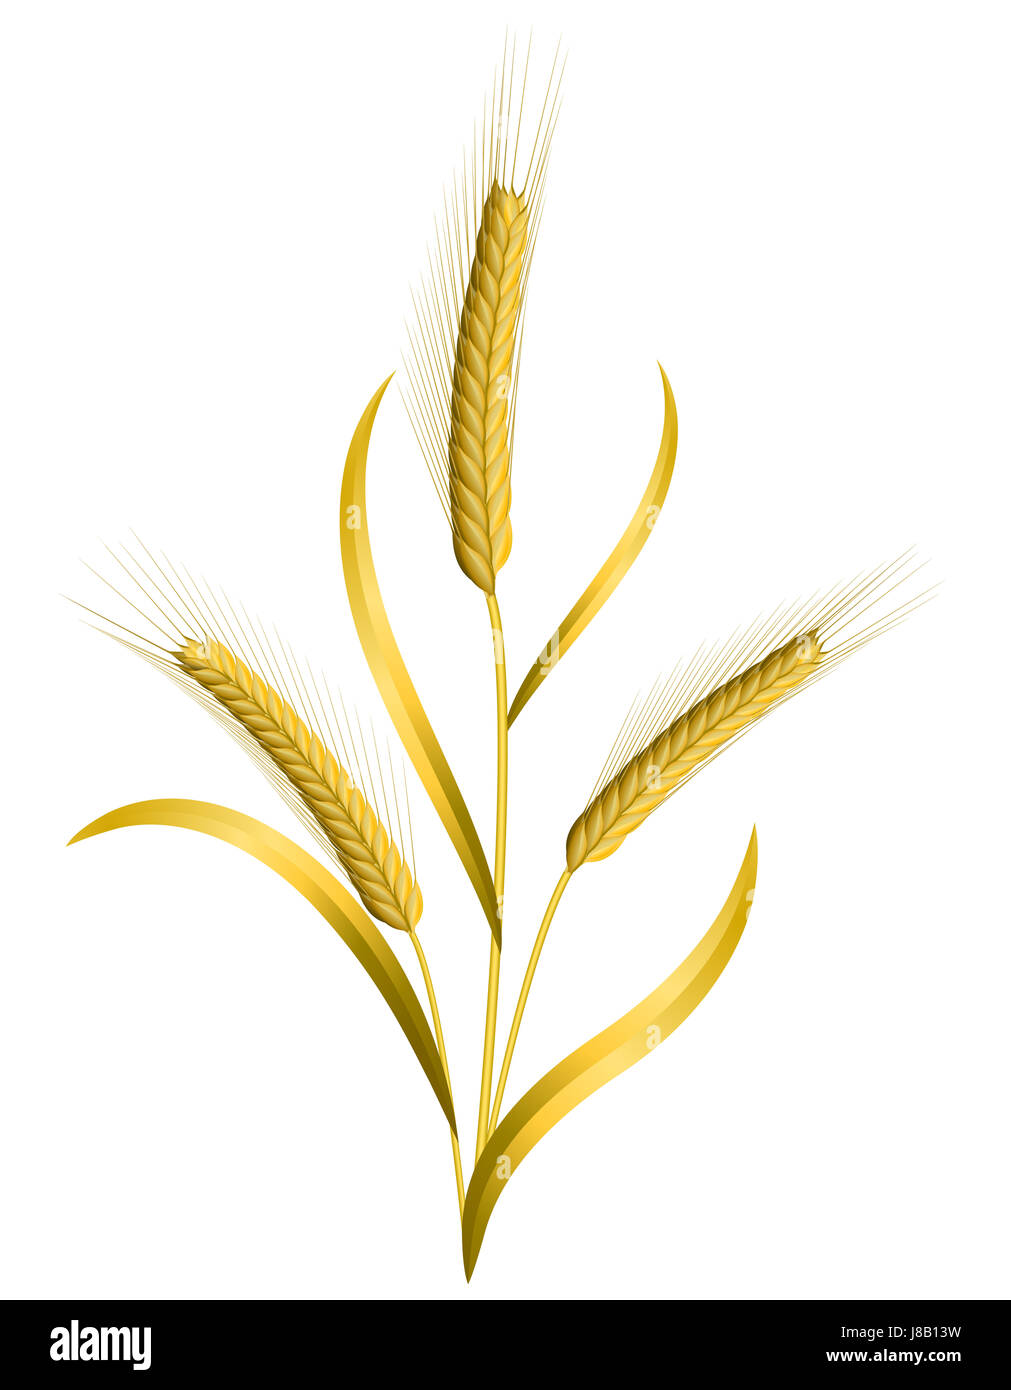 Pane, isolato, il grano, il raccolto di frumento, orecchio, di semi, cereali, alimenti, aliment, Foto Stock